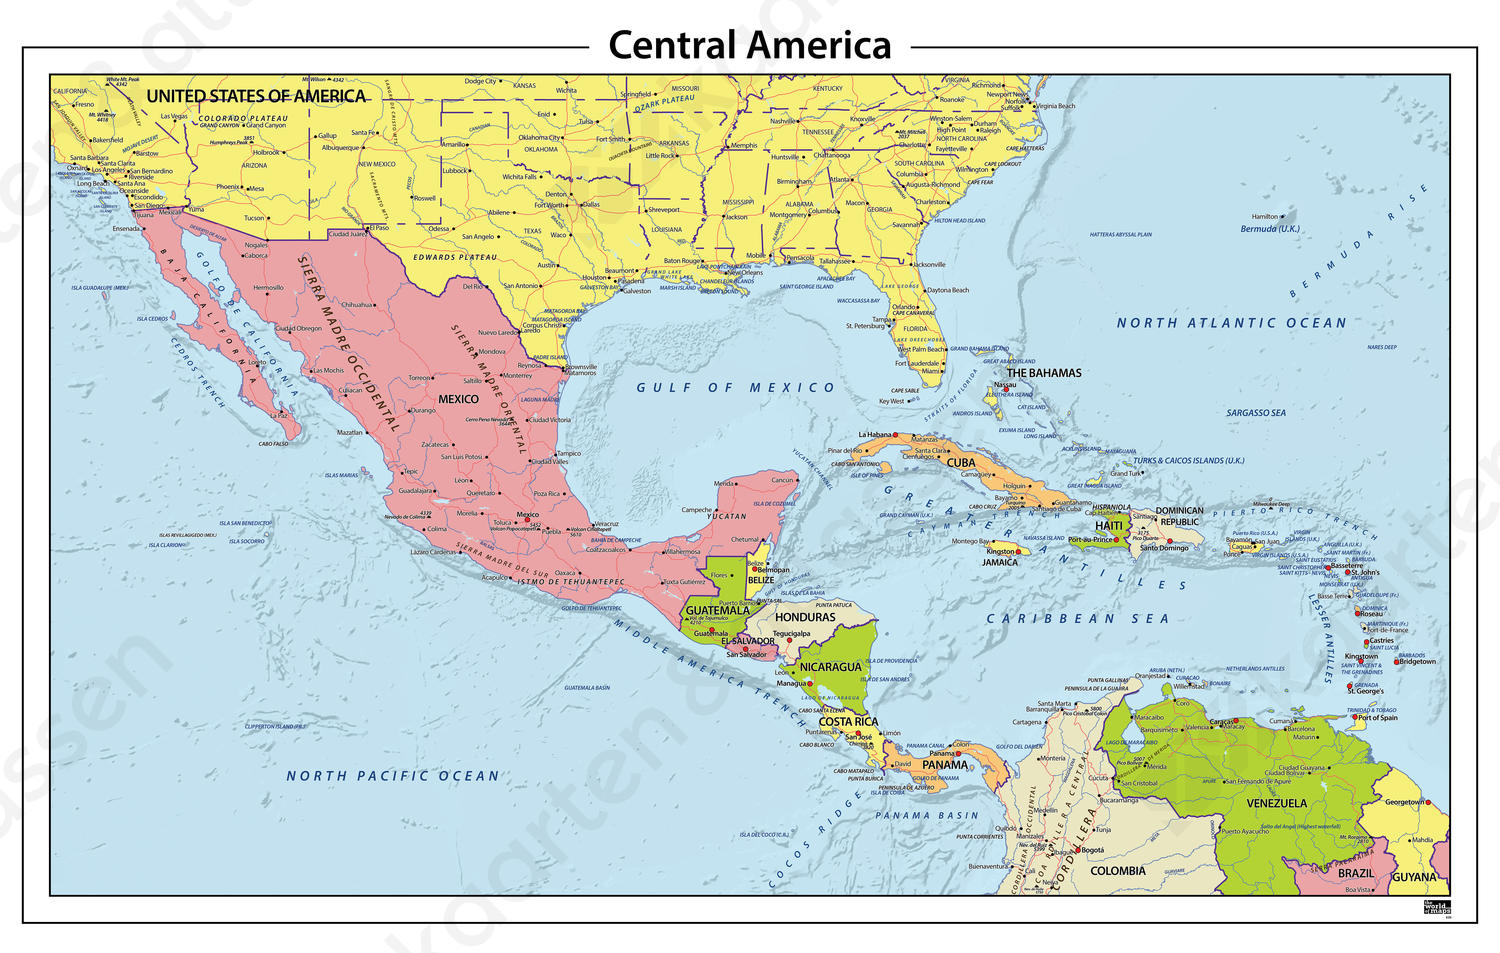 Brullen Weinig Knorretje Digitale Centraal Amerika staatkundige kaart 630 | Kaarten en Atlassen.nl